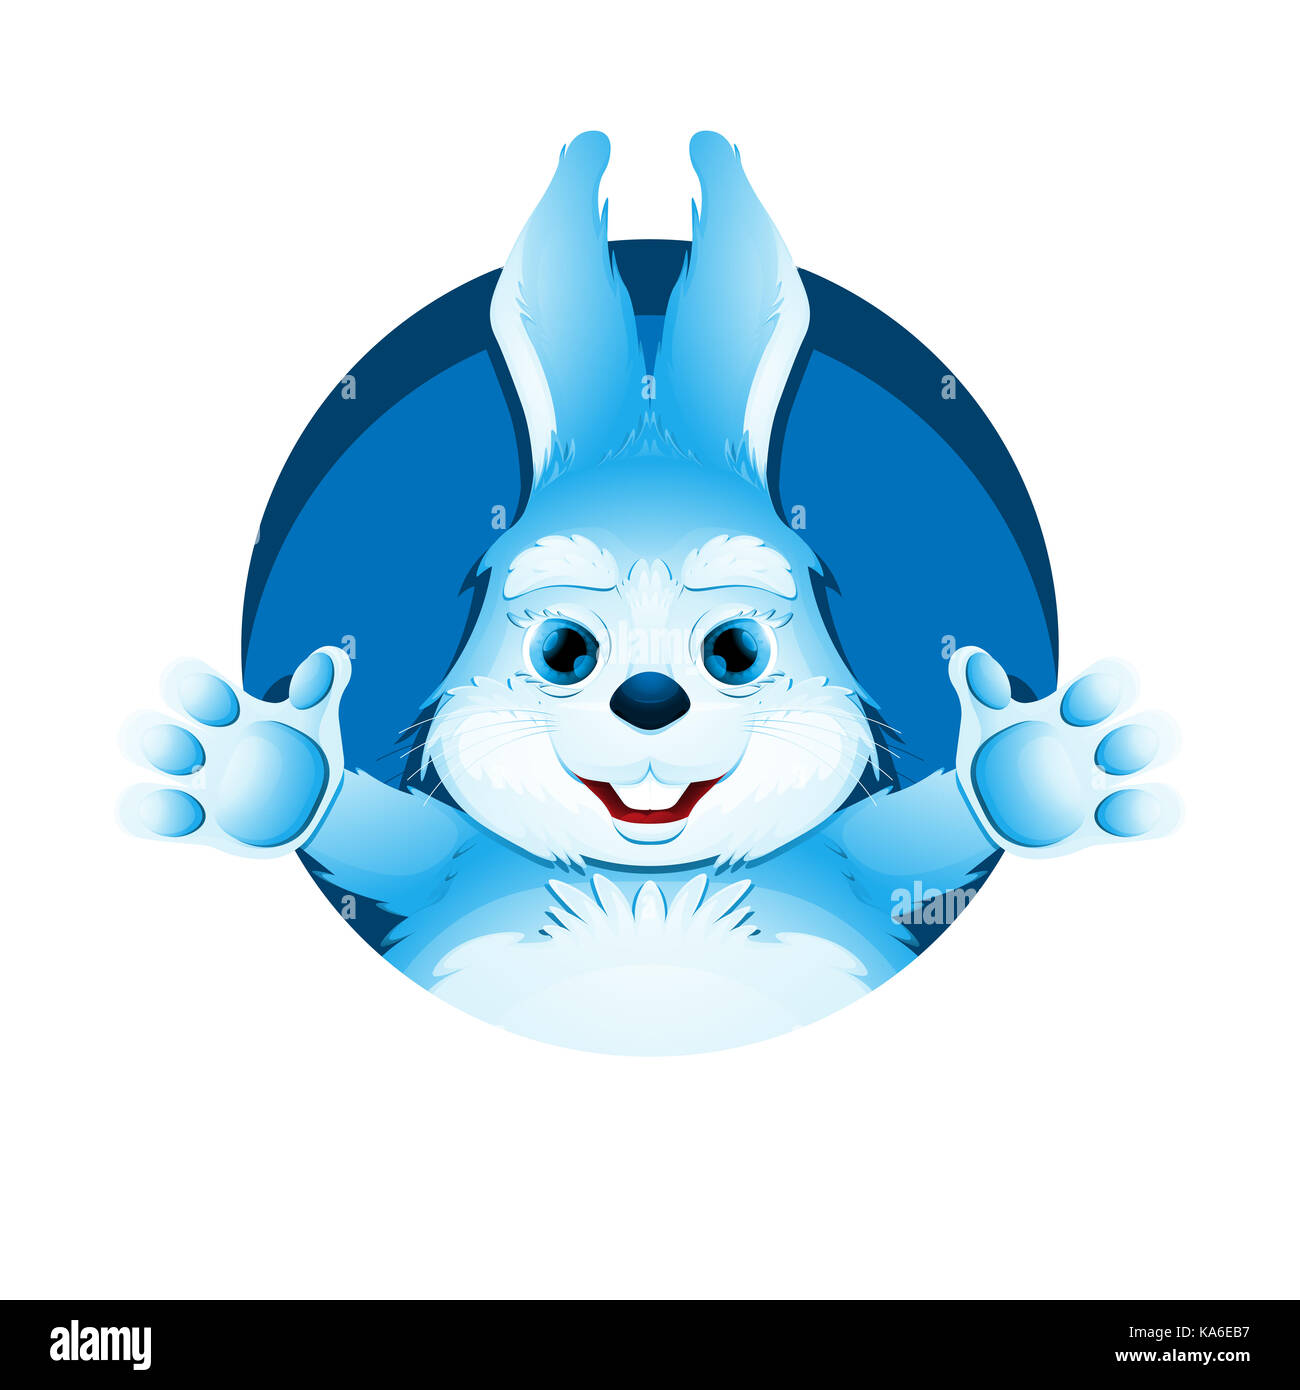 Avatar Di Carino Blue Bunny Ritratto Di Coniglio Divertente Per Profilo Utente Immagine Foto Stock Alamy